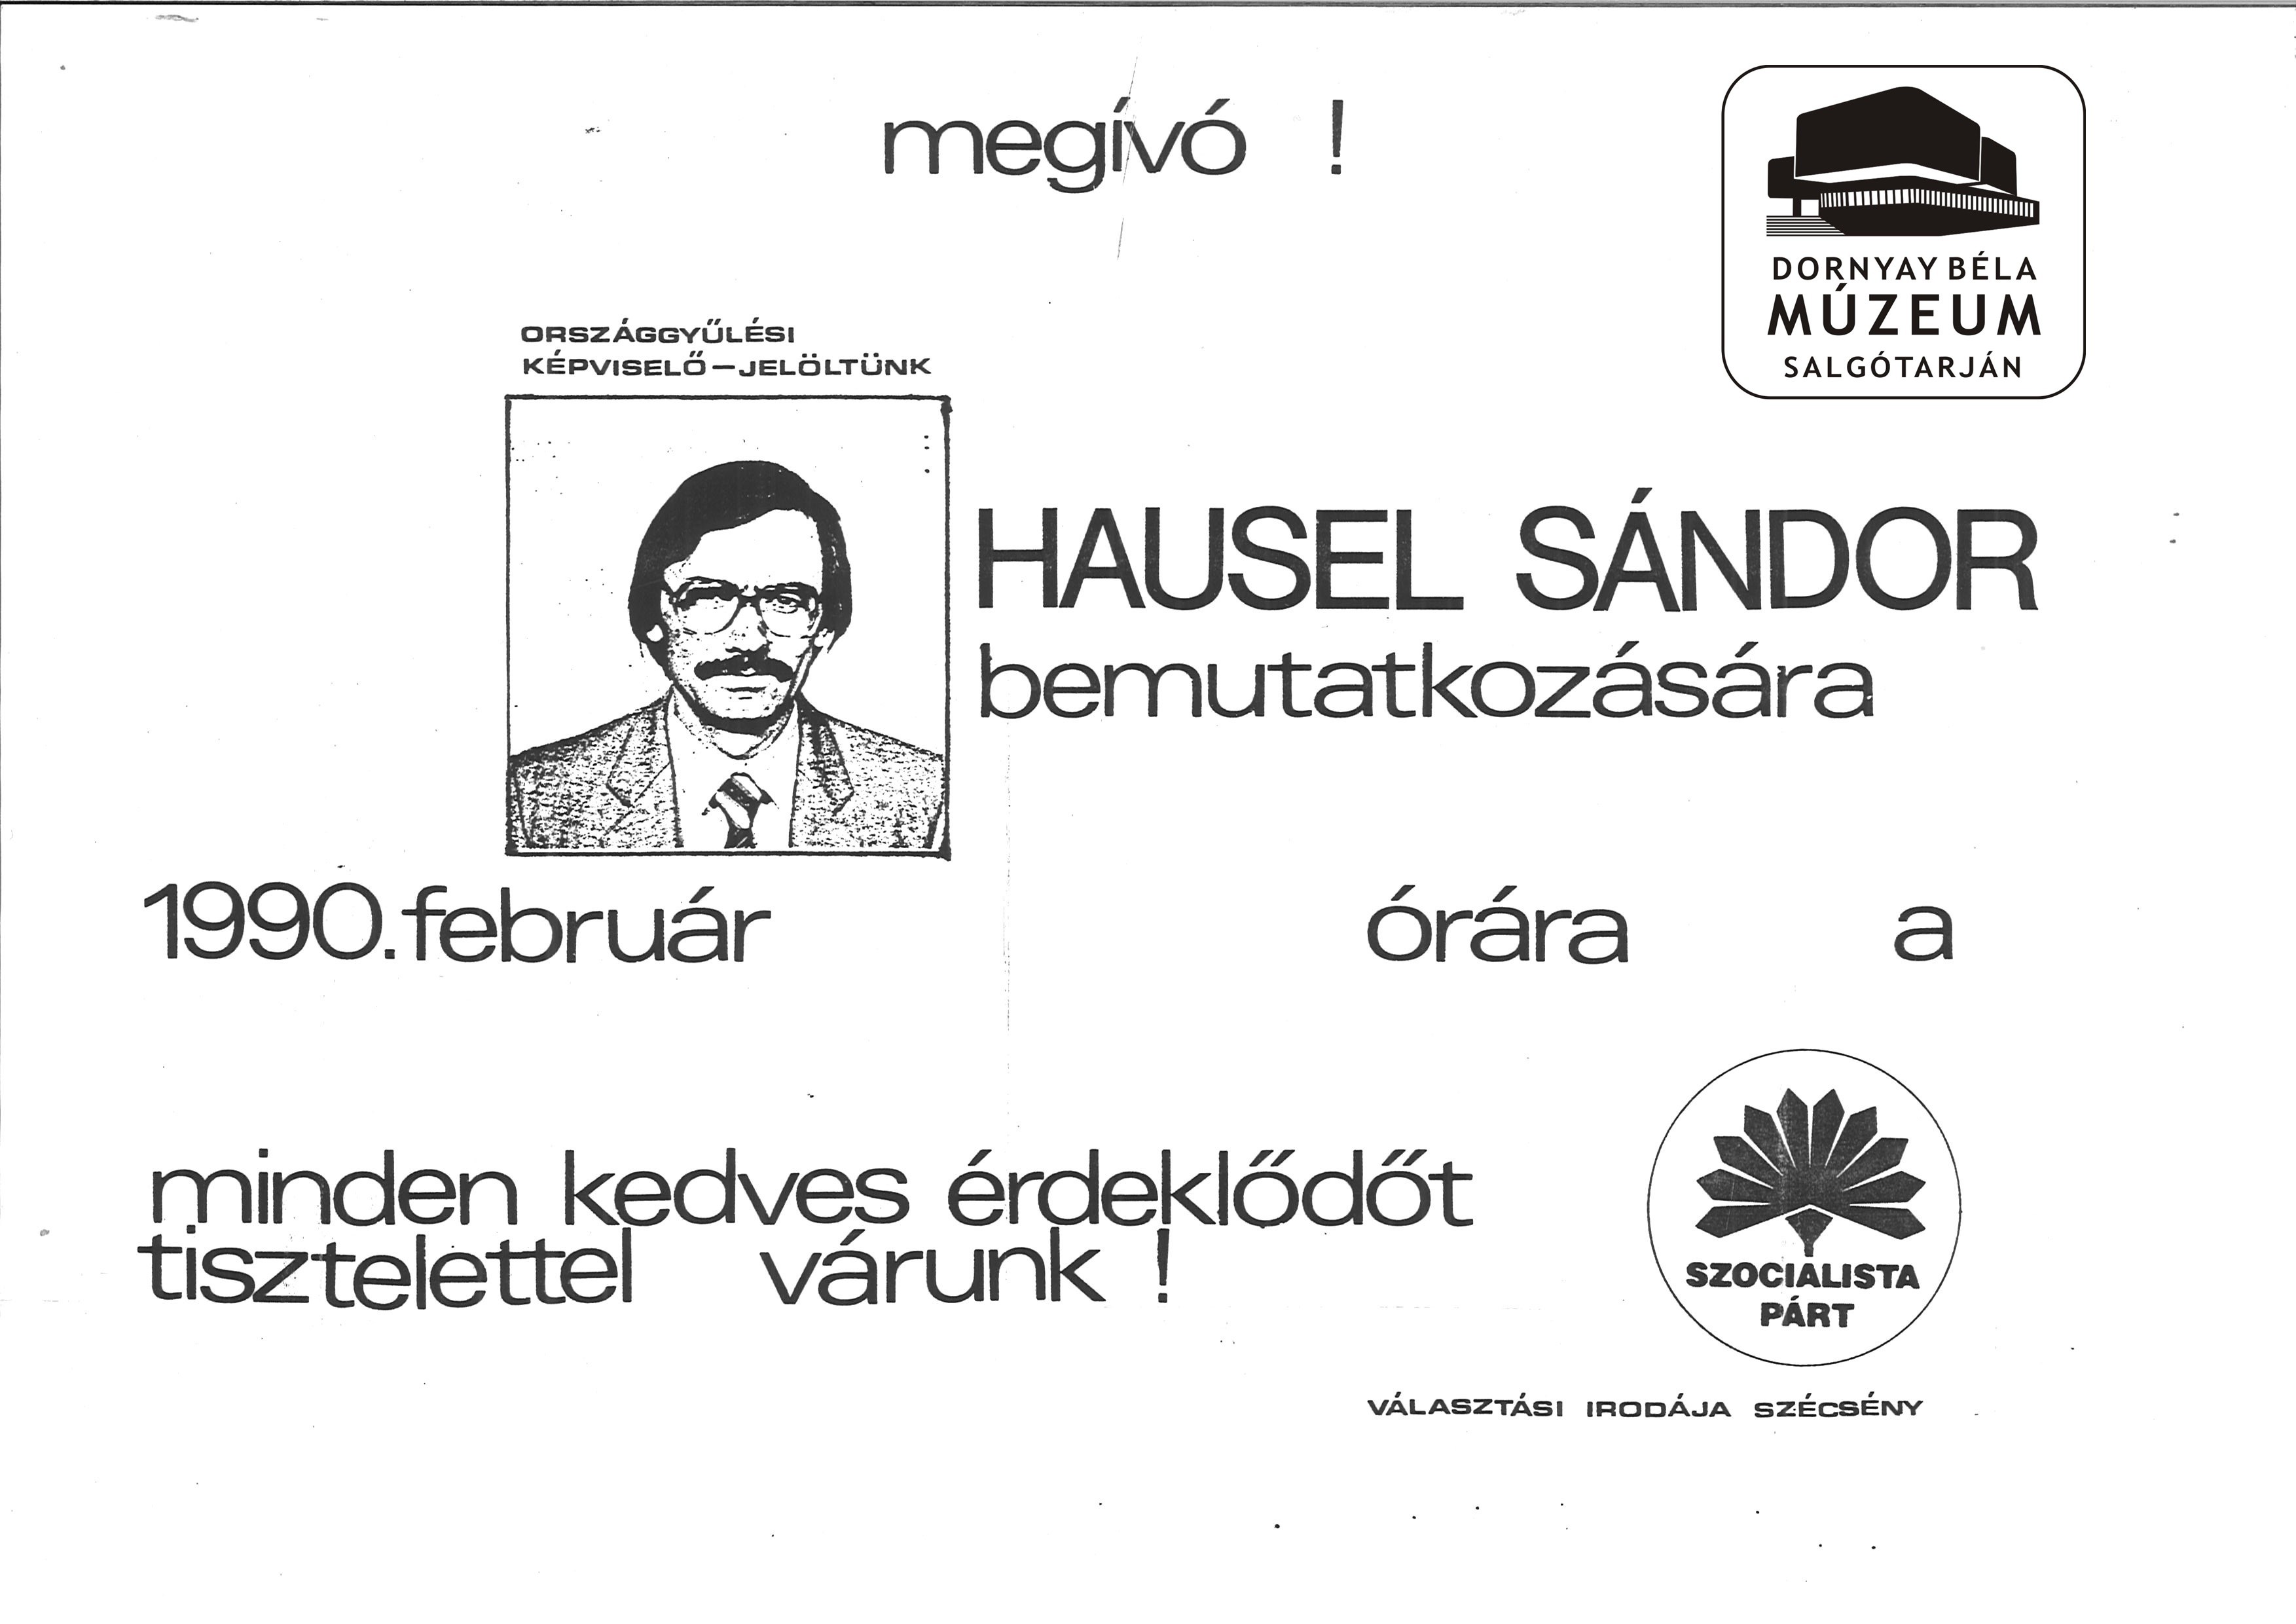 Hausel Sándor szécsényi országgyűlési képviselőjelölt programjának röplapja. MSZP. (Dornyay Béla Múzeum, Salgótarján CC BY-NC-SA)